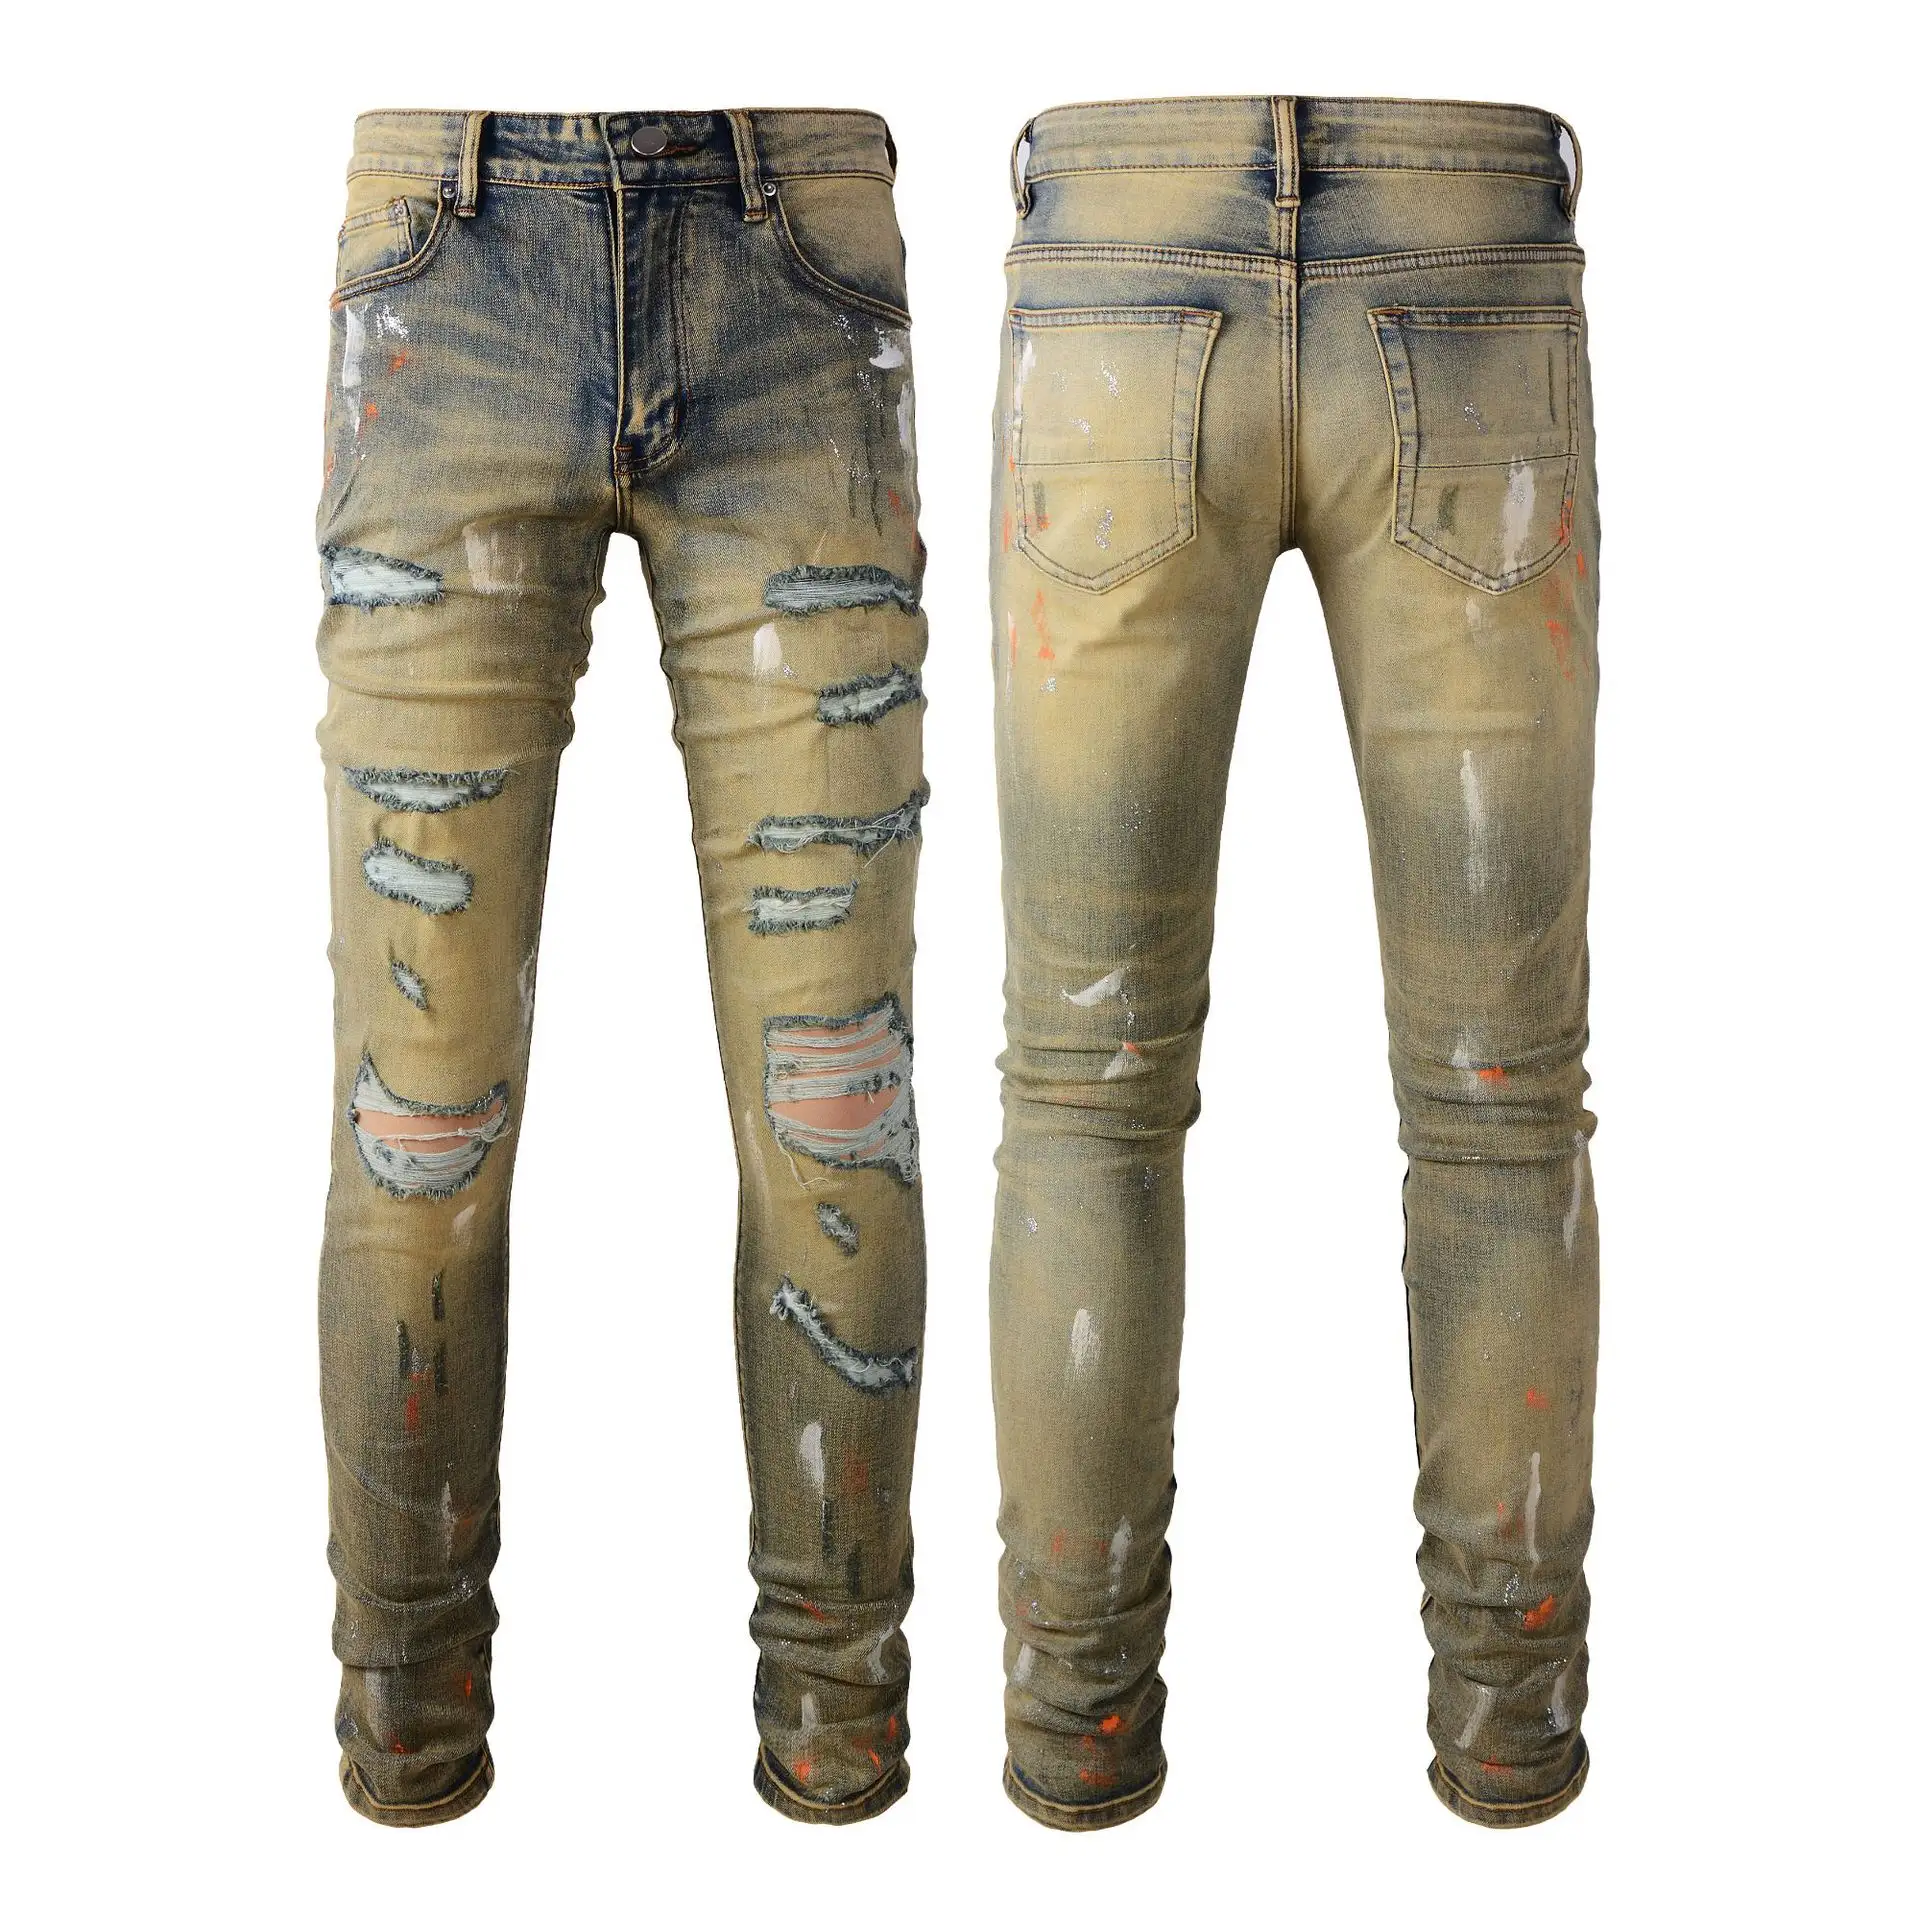 Новые стильные джинсовые джинсы в наличии, модные дизайнерские Джинсовые брюки из известных брендов, ковбойские облегающие брюки Amiry demin